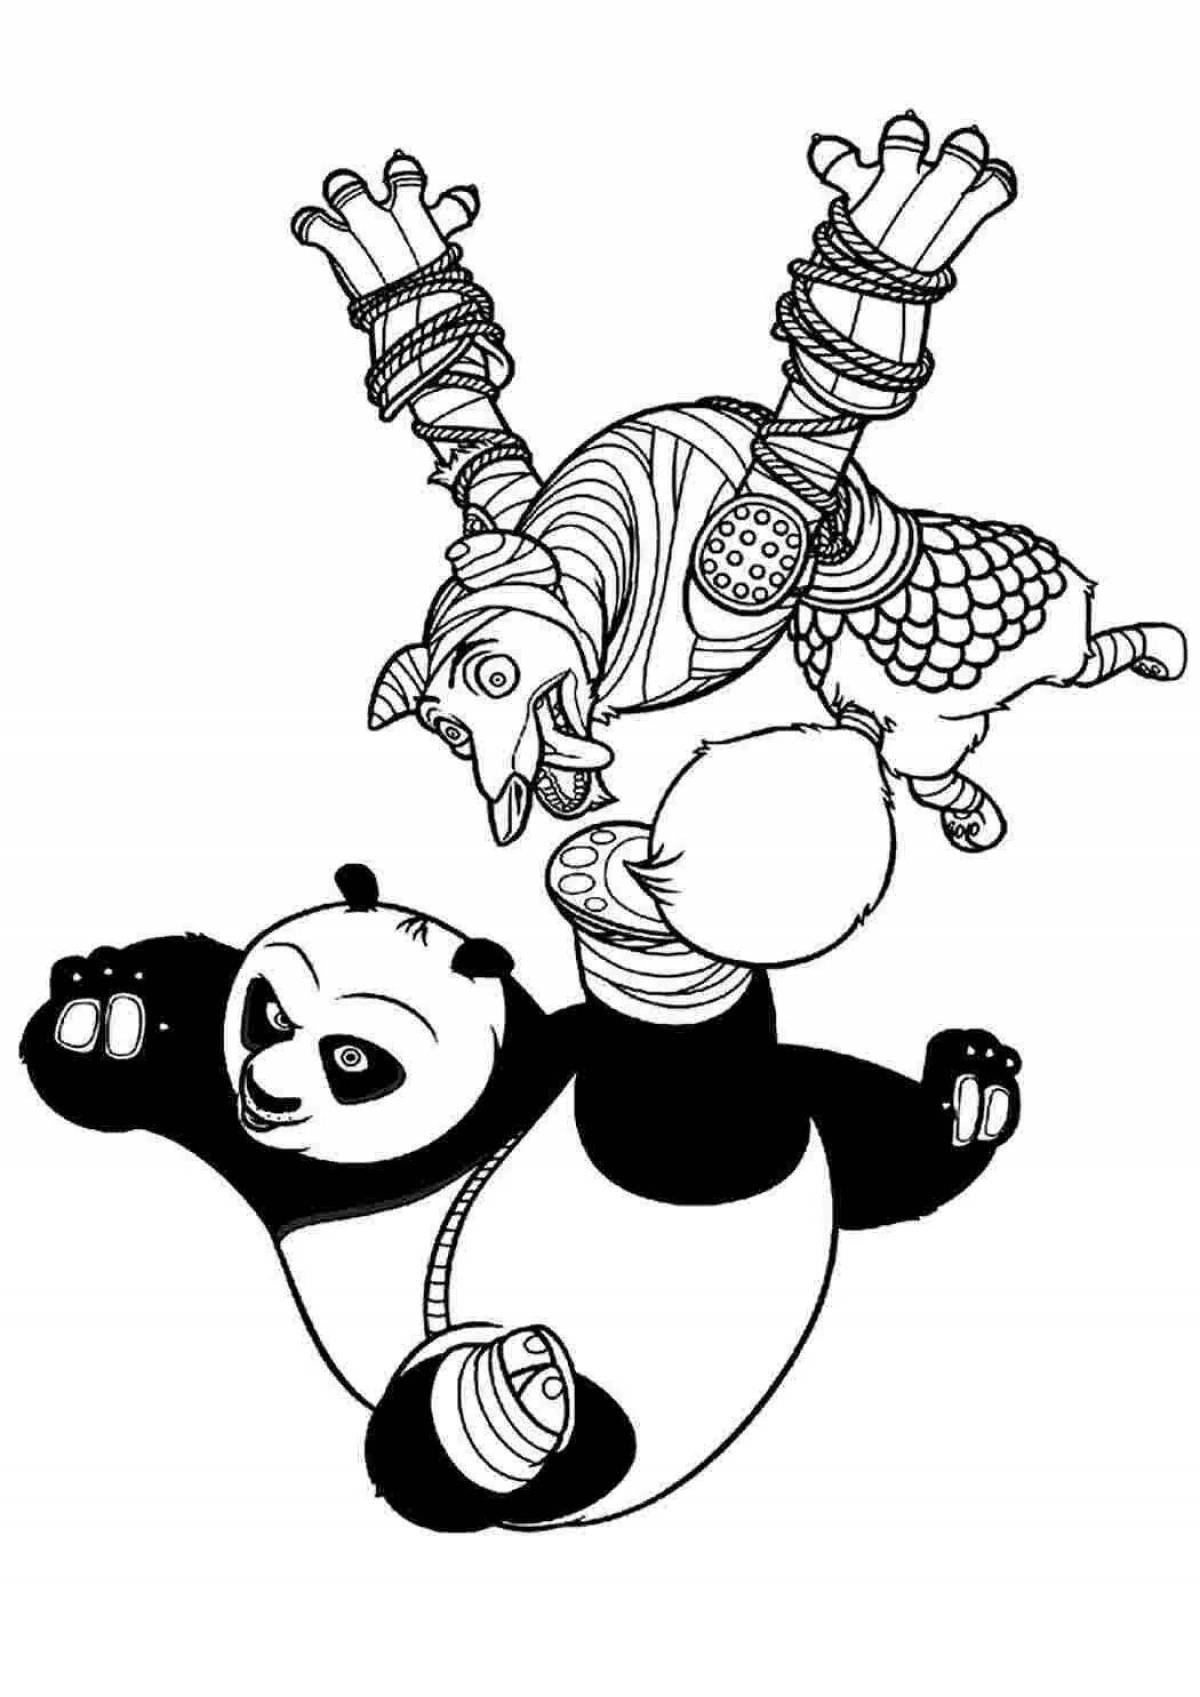 Wonderful Kung Fu Panda 3 coloring book